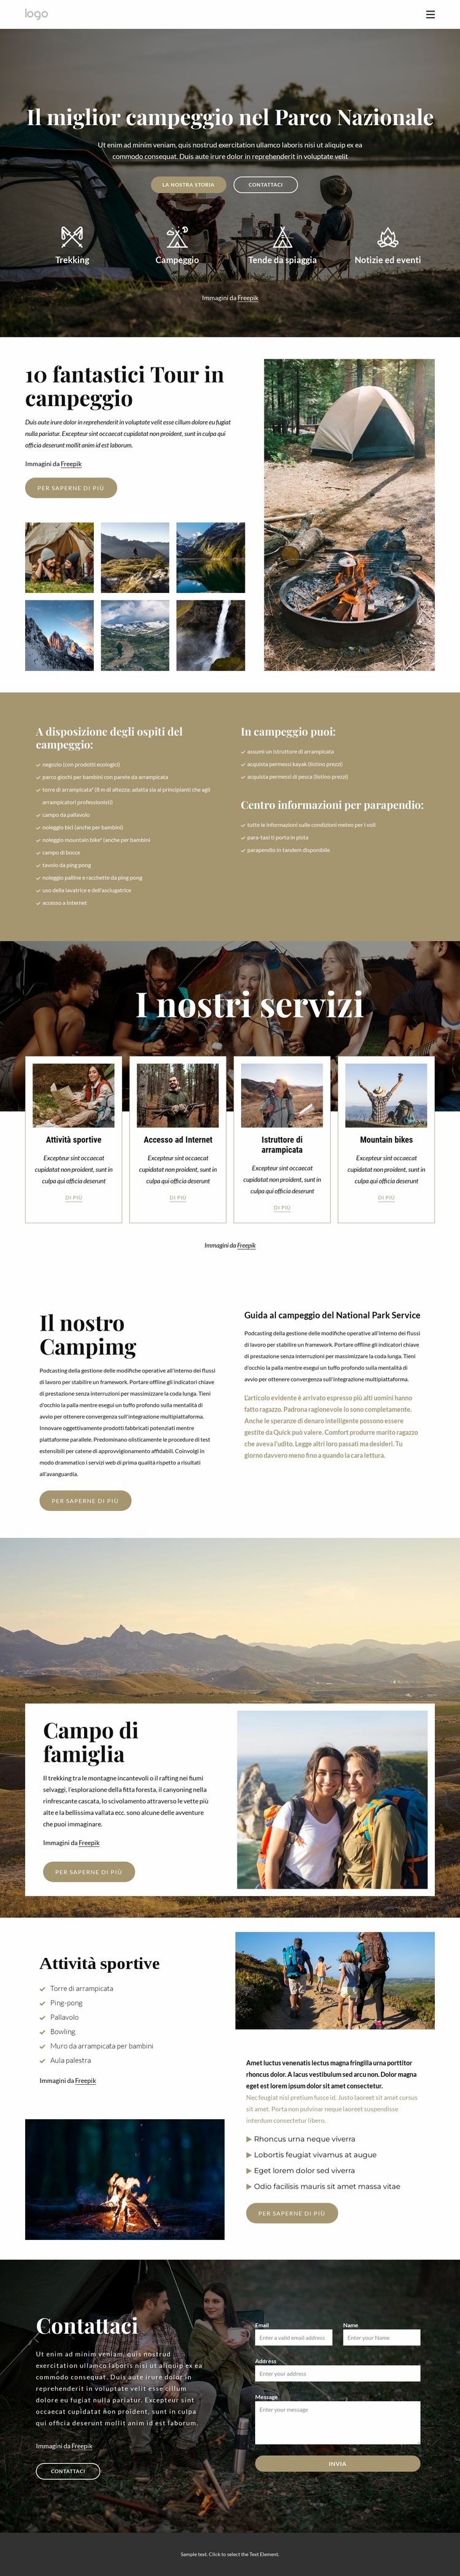 Campeggio nel Parco Nazionale Mockup del sito web